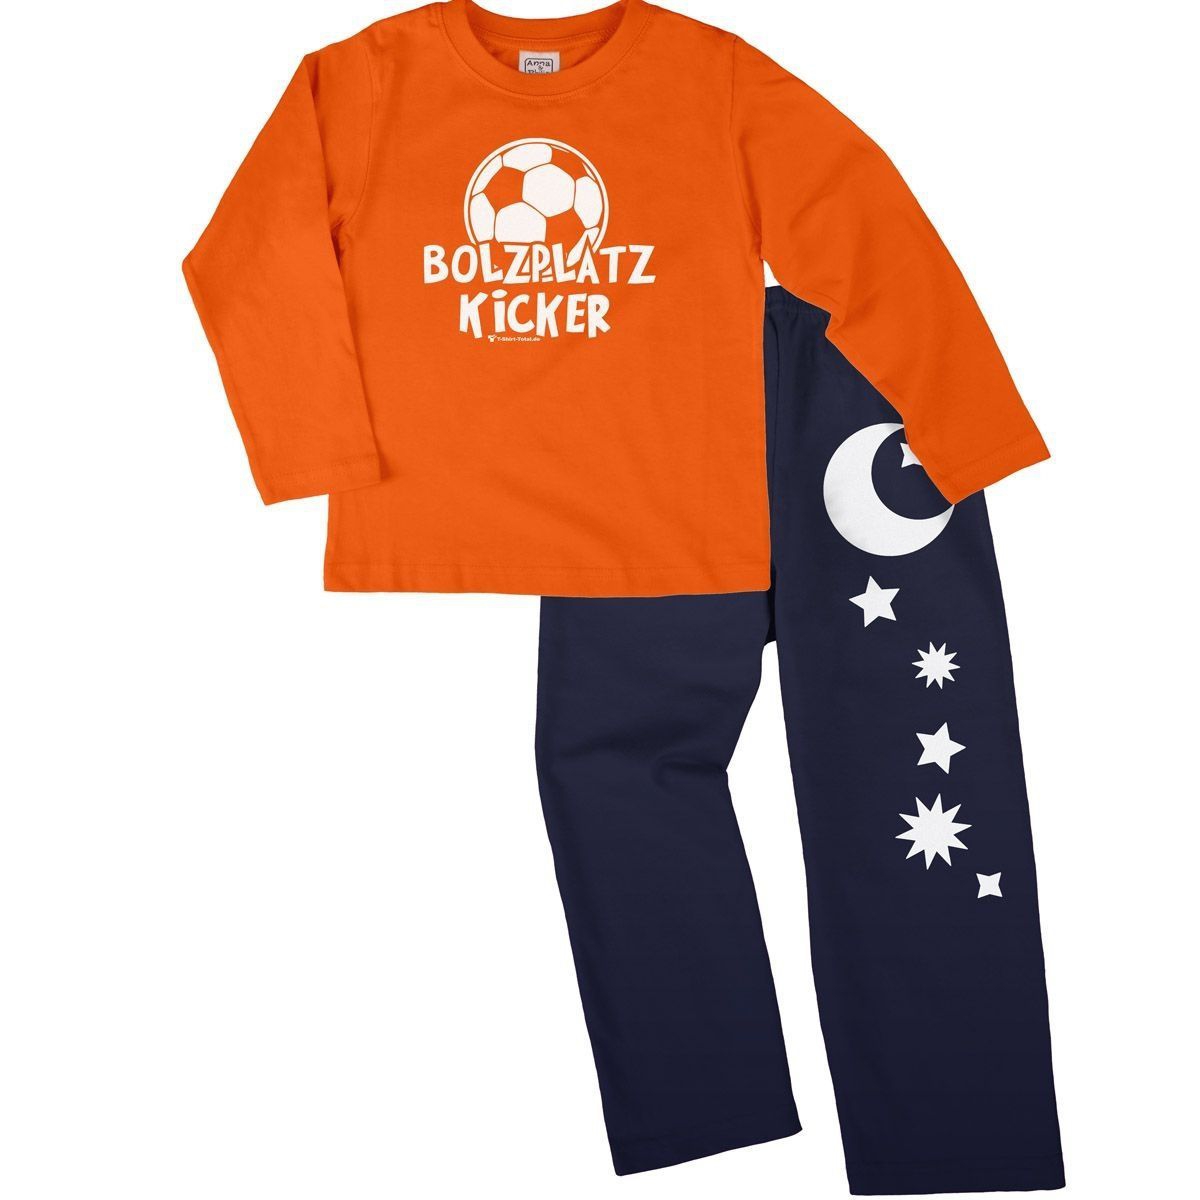 Bolzplatz Kicker Pyjama Set orange / navy 104